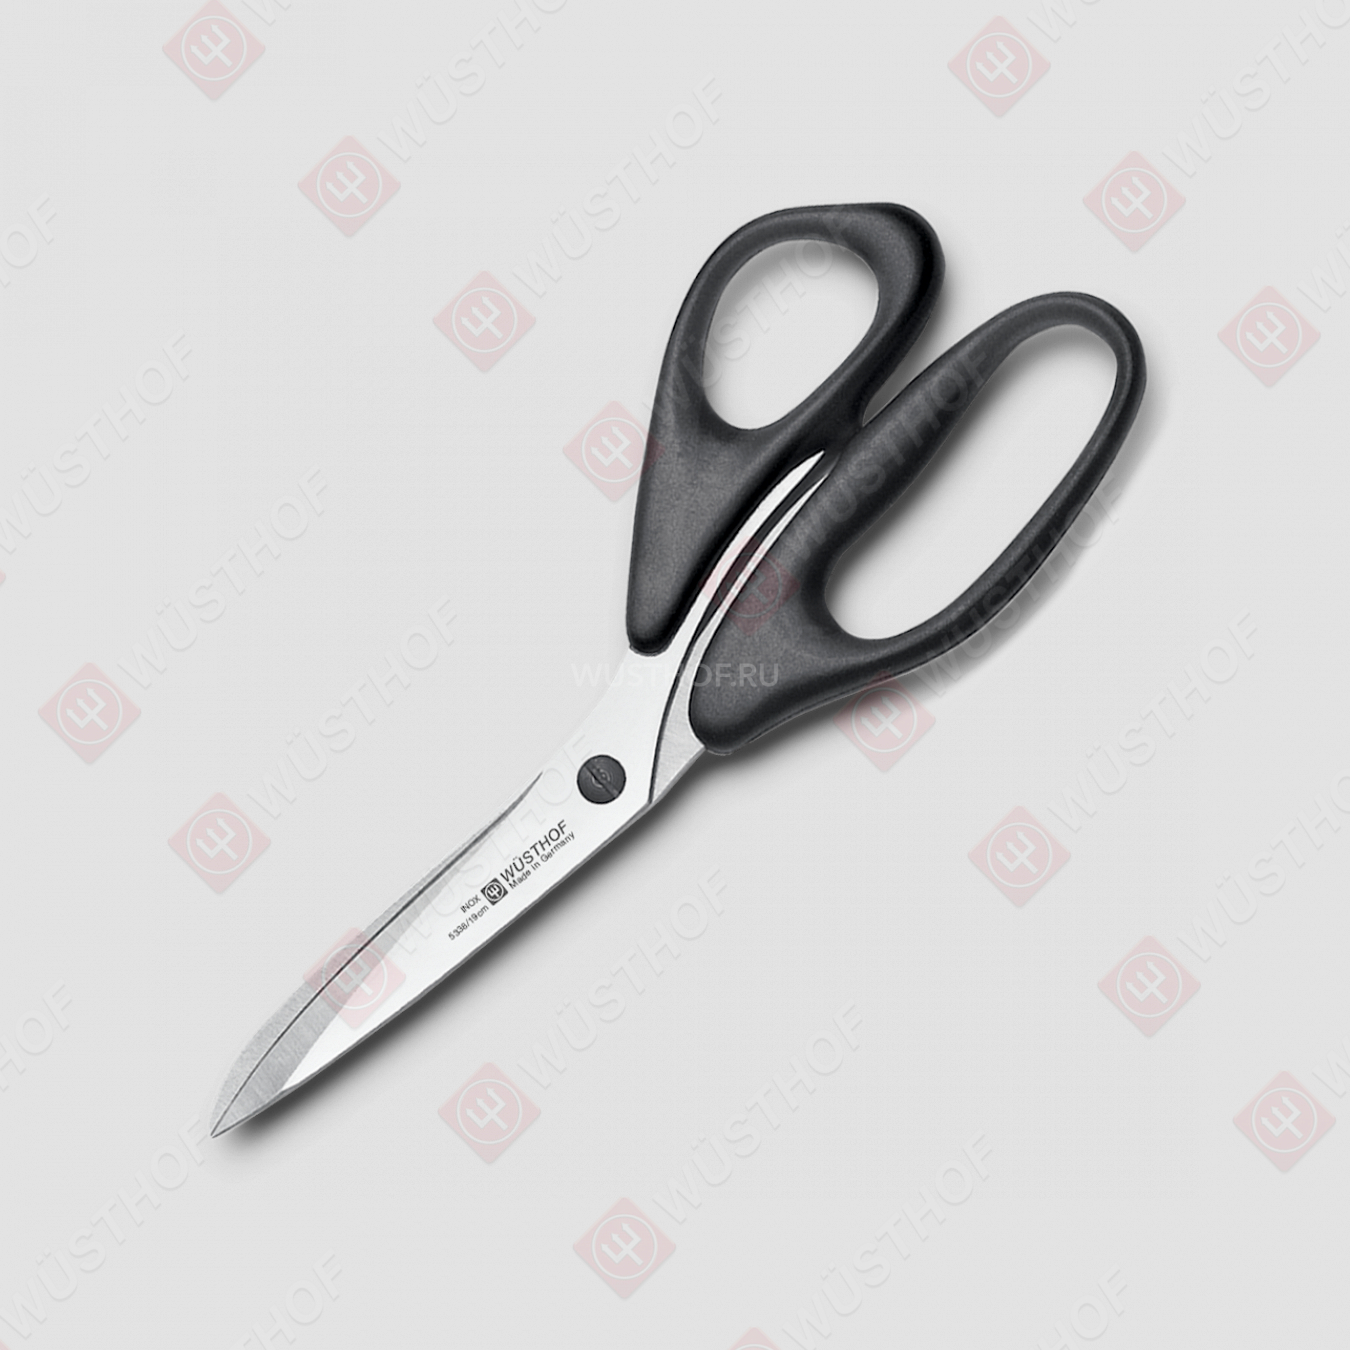 Ножницы хозяйственные 19 см, нержавеющая сталь, пластиковые ручки, серия Professional tools, WUESTHOF, Золинген, Германия